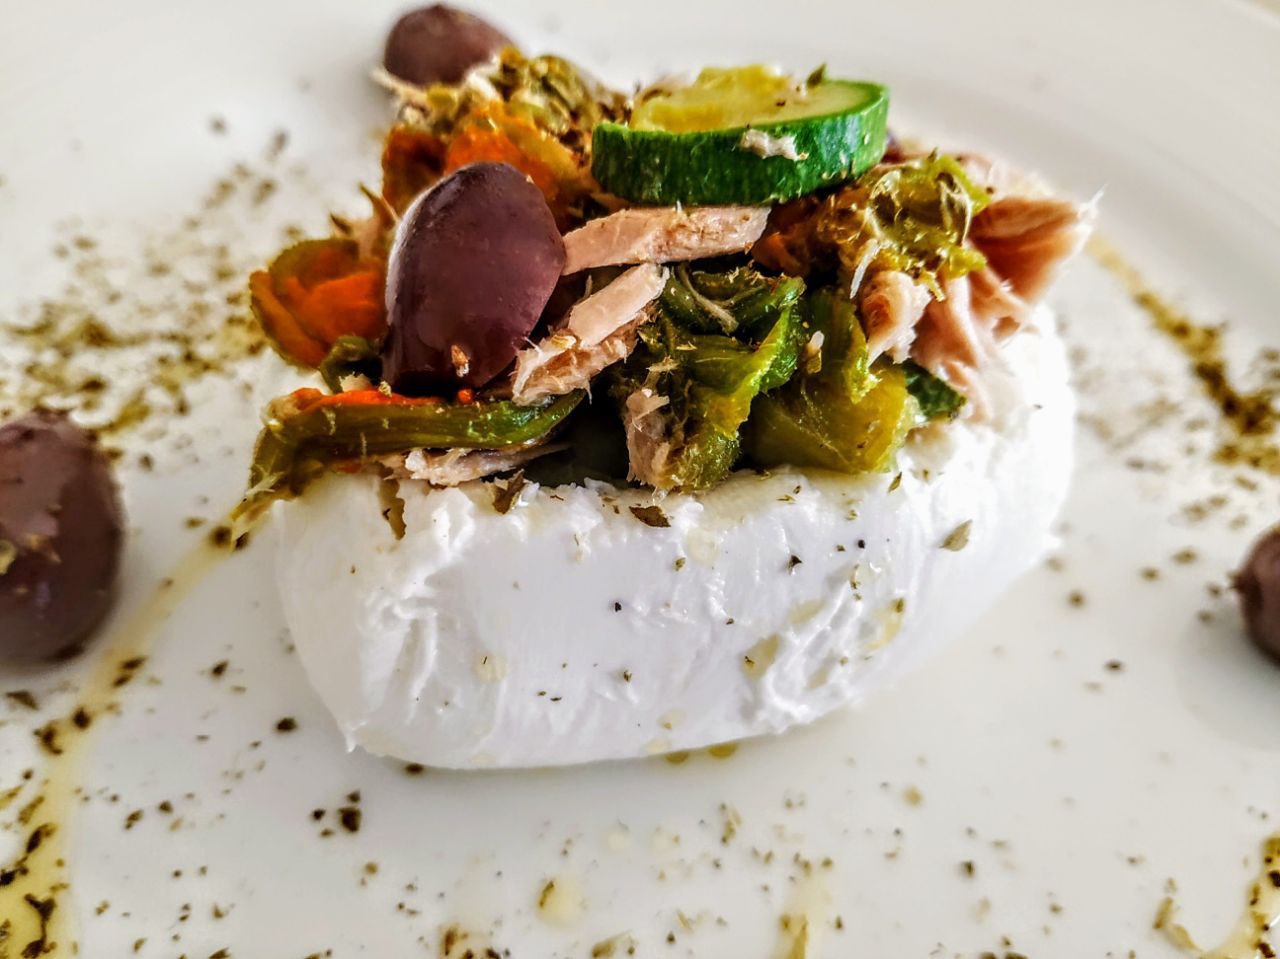 Antipasti freddi economici semplici e veloci: mozzarella ripiena con filetti di tonno al naturale capperi olive e fiori di zucchine!